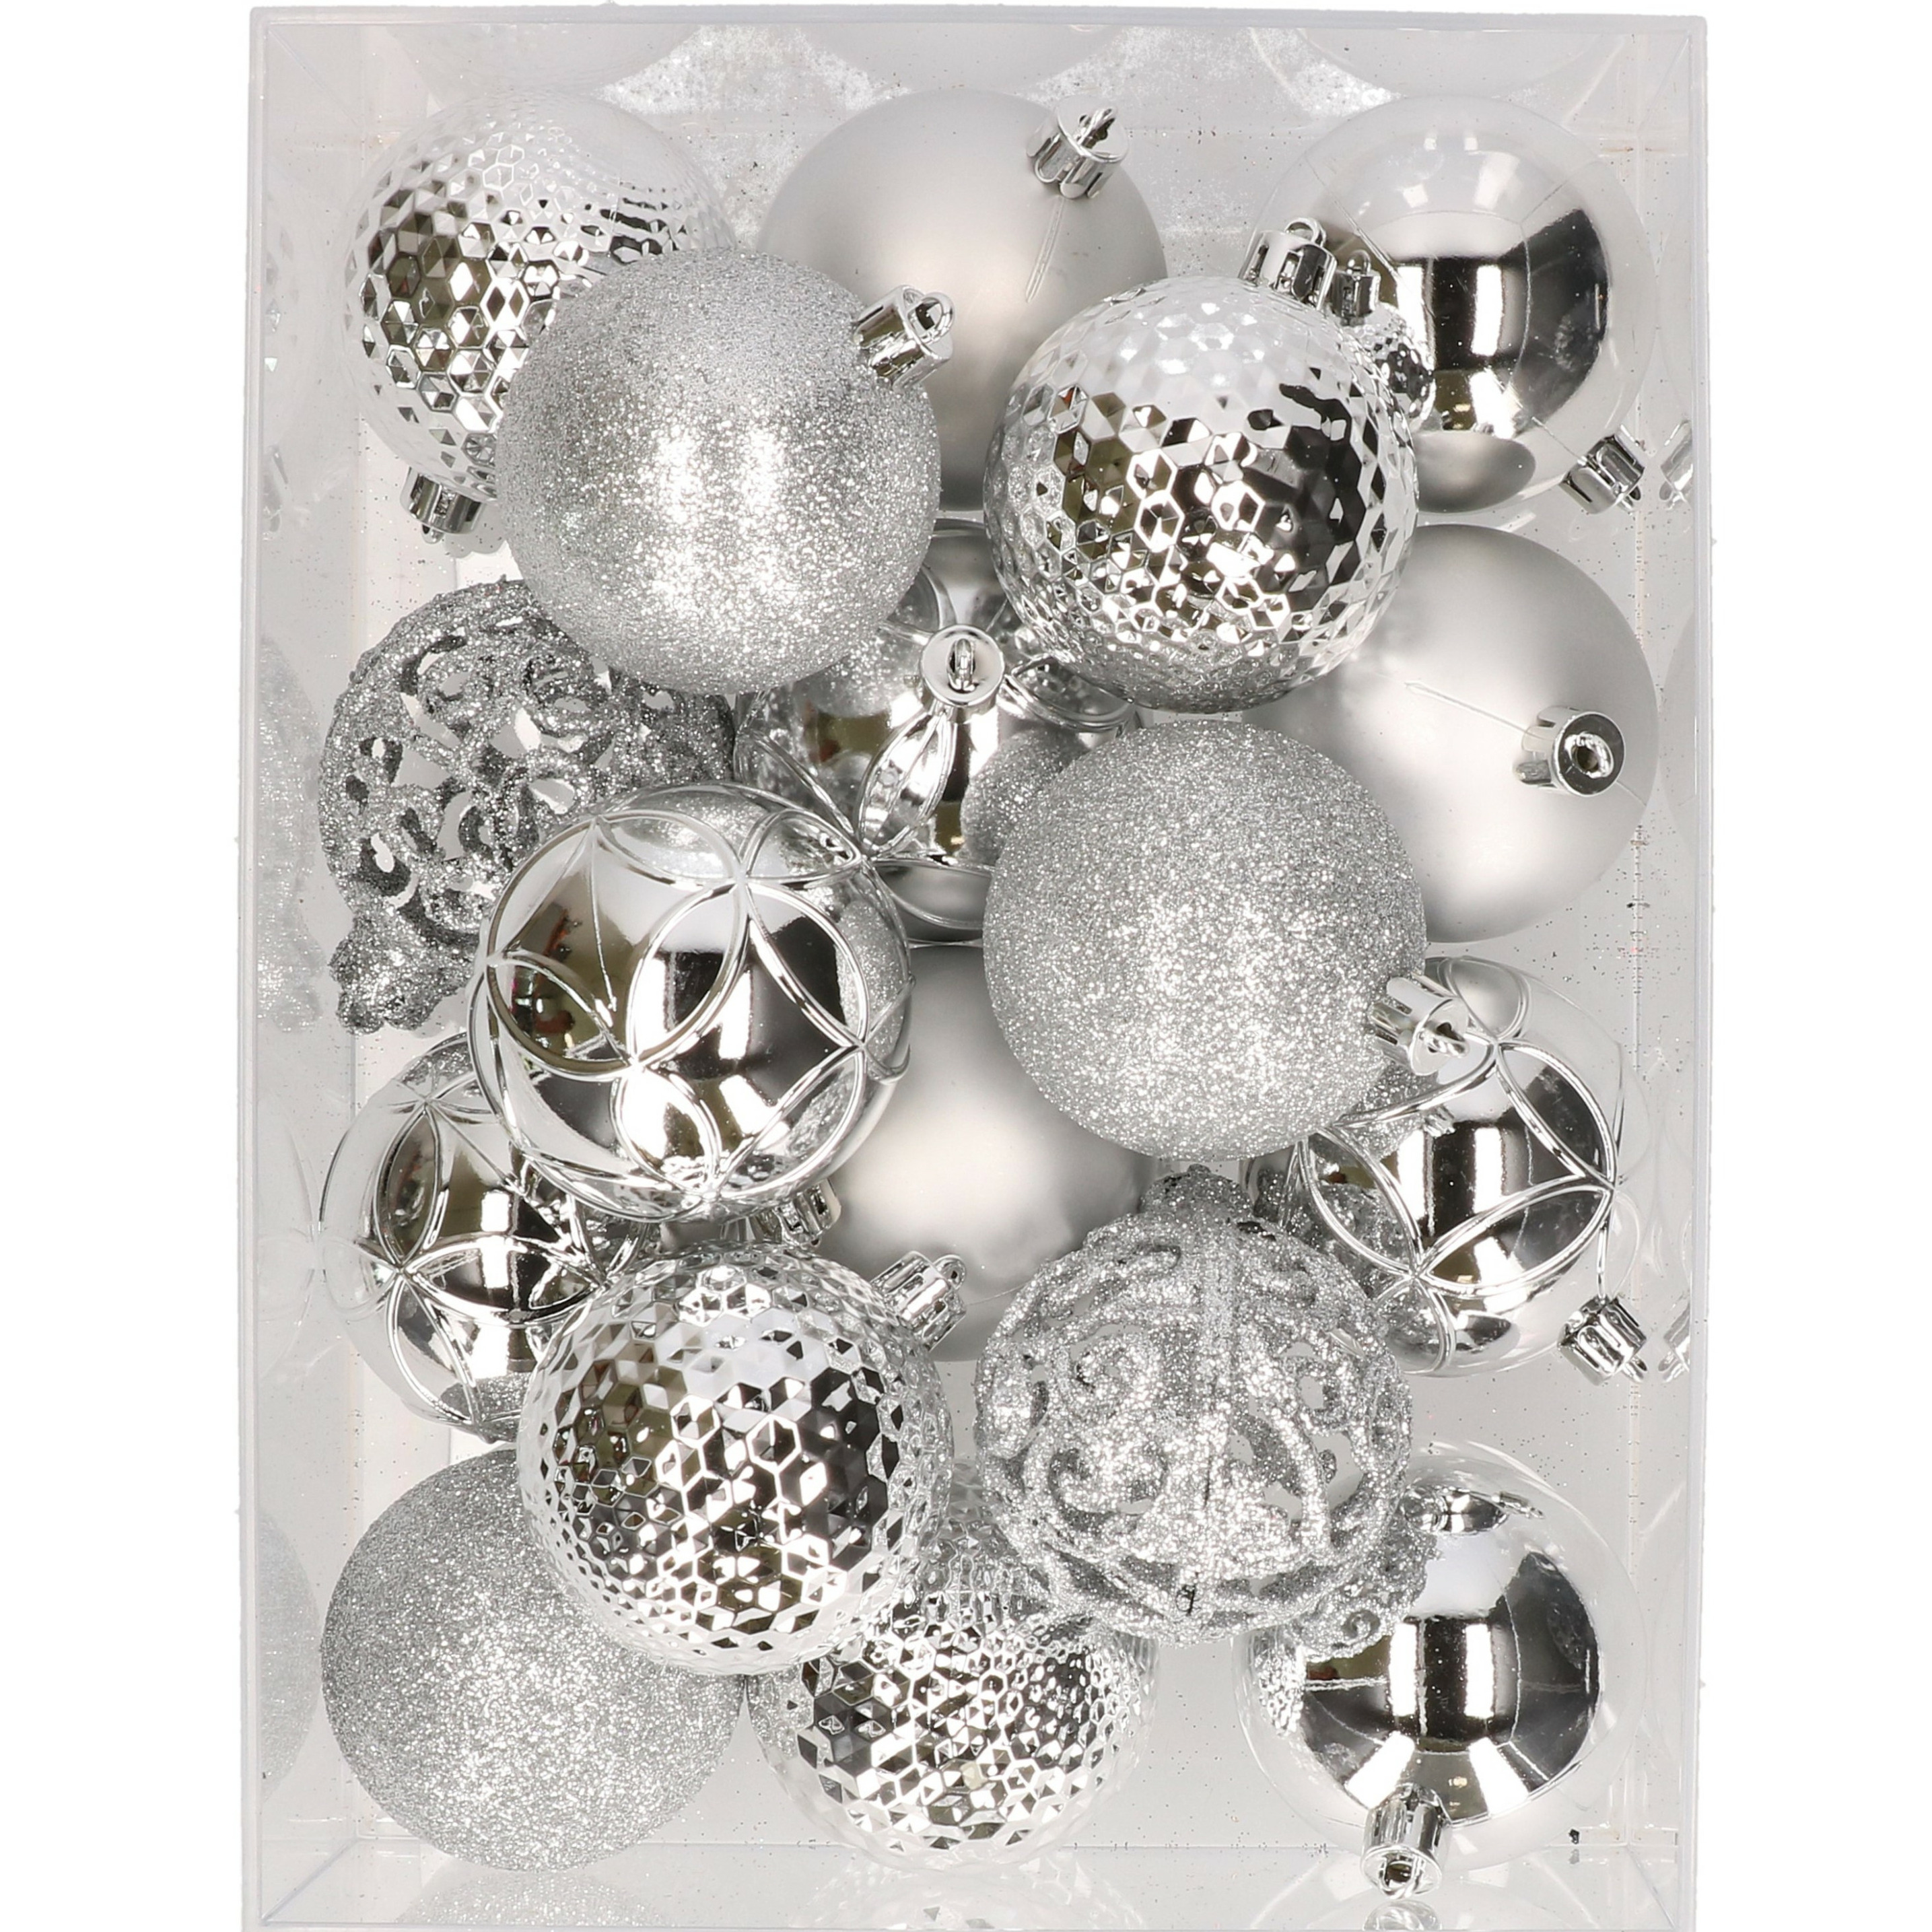 37x stuks kunststof kerstballen zilver 6 cm inclusief kerstbalhaakjes